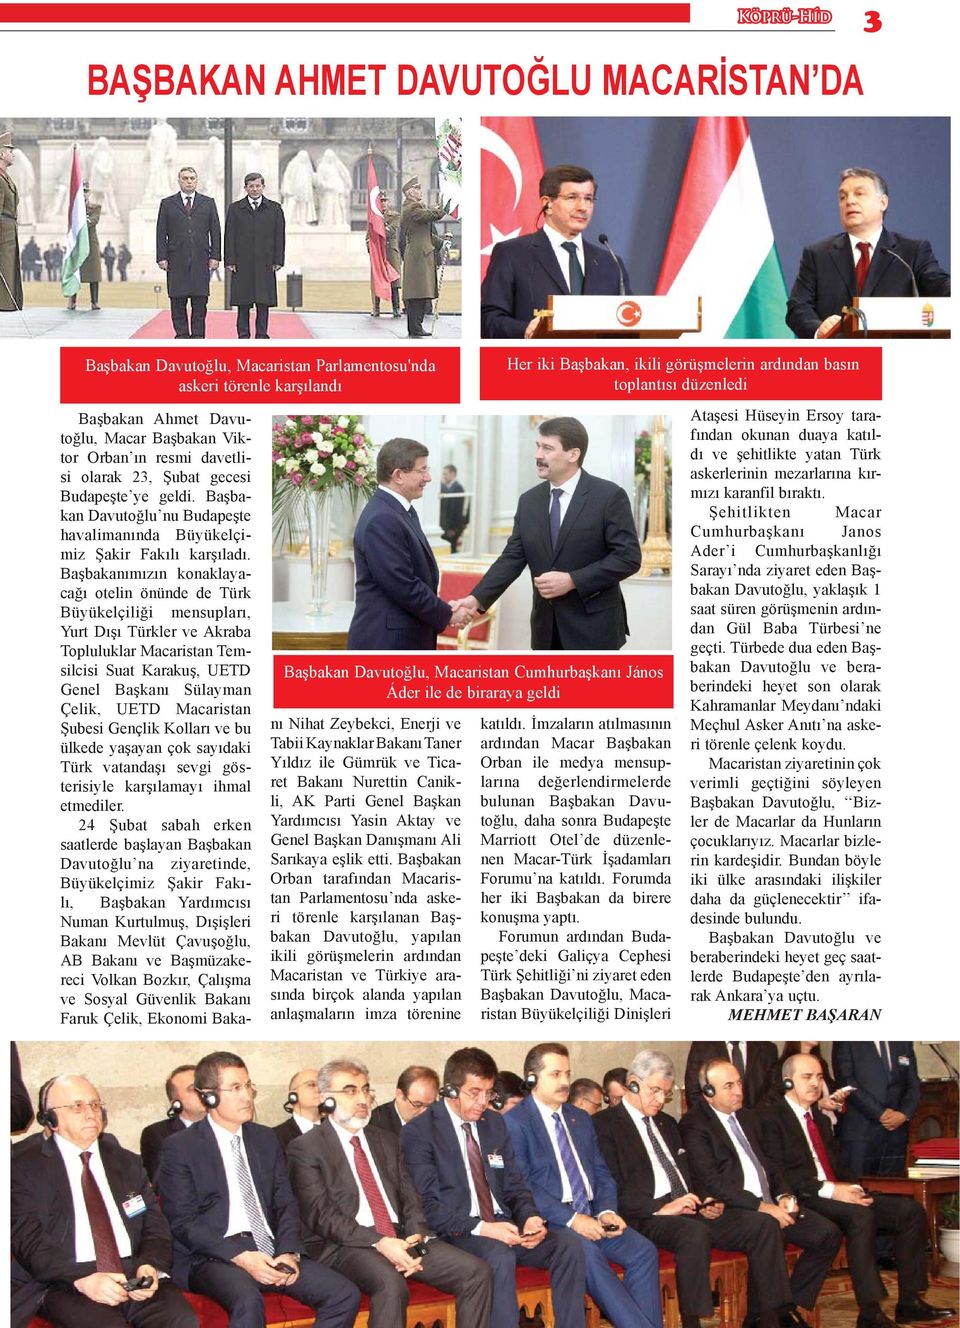 Başbakan Davutoğlu nu Budapeşte havalimanında Büyükelçimiz Şakir Fakılı karşıladı.